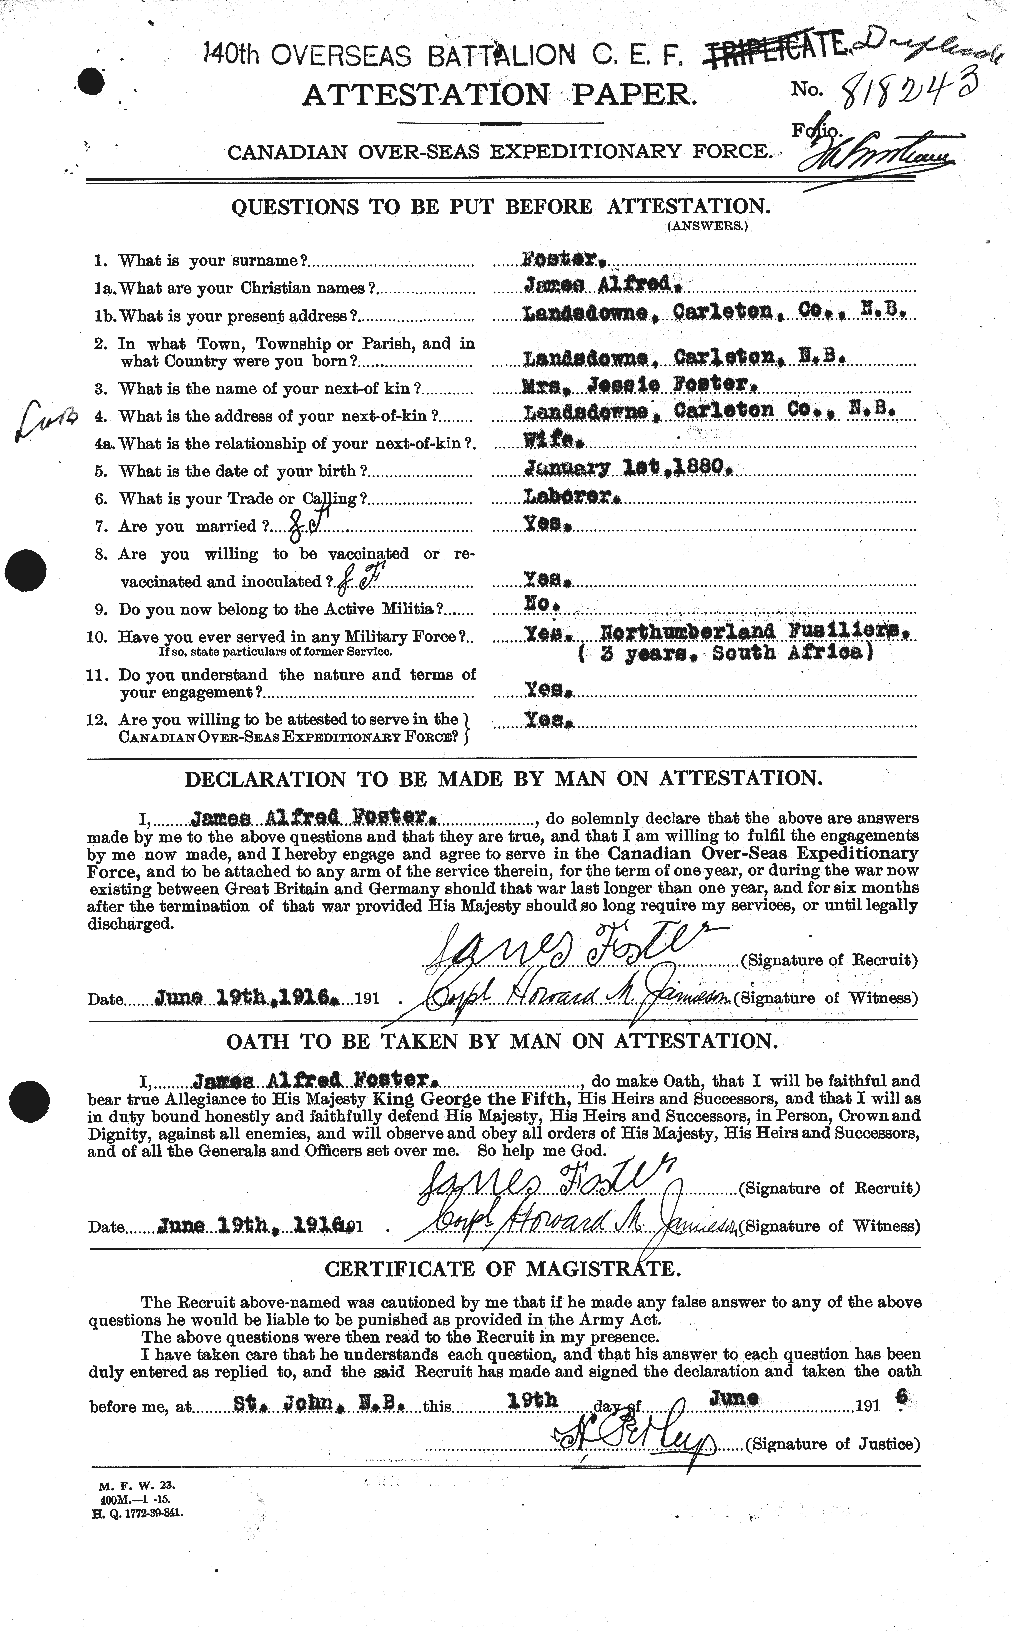 Dossiers du Personnel de la Première Guerre mondiale - CEC 333296a